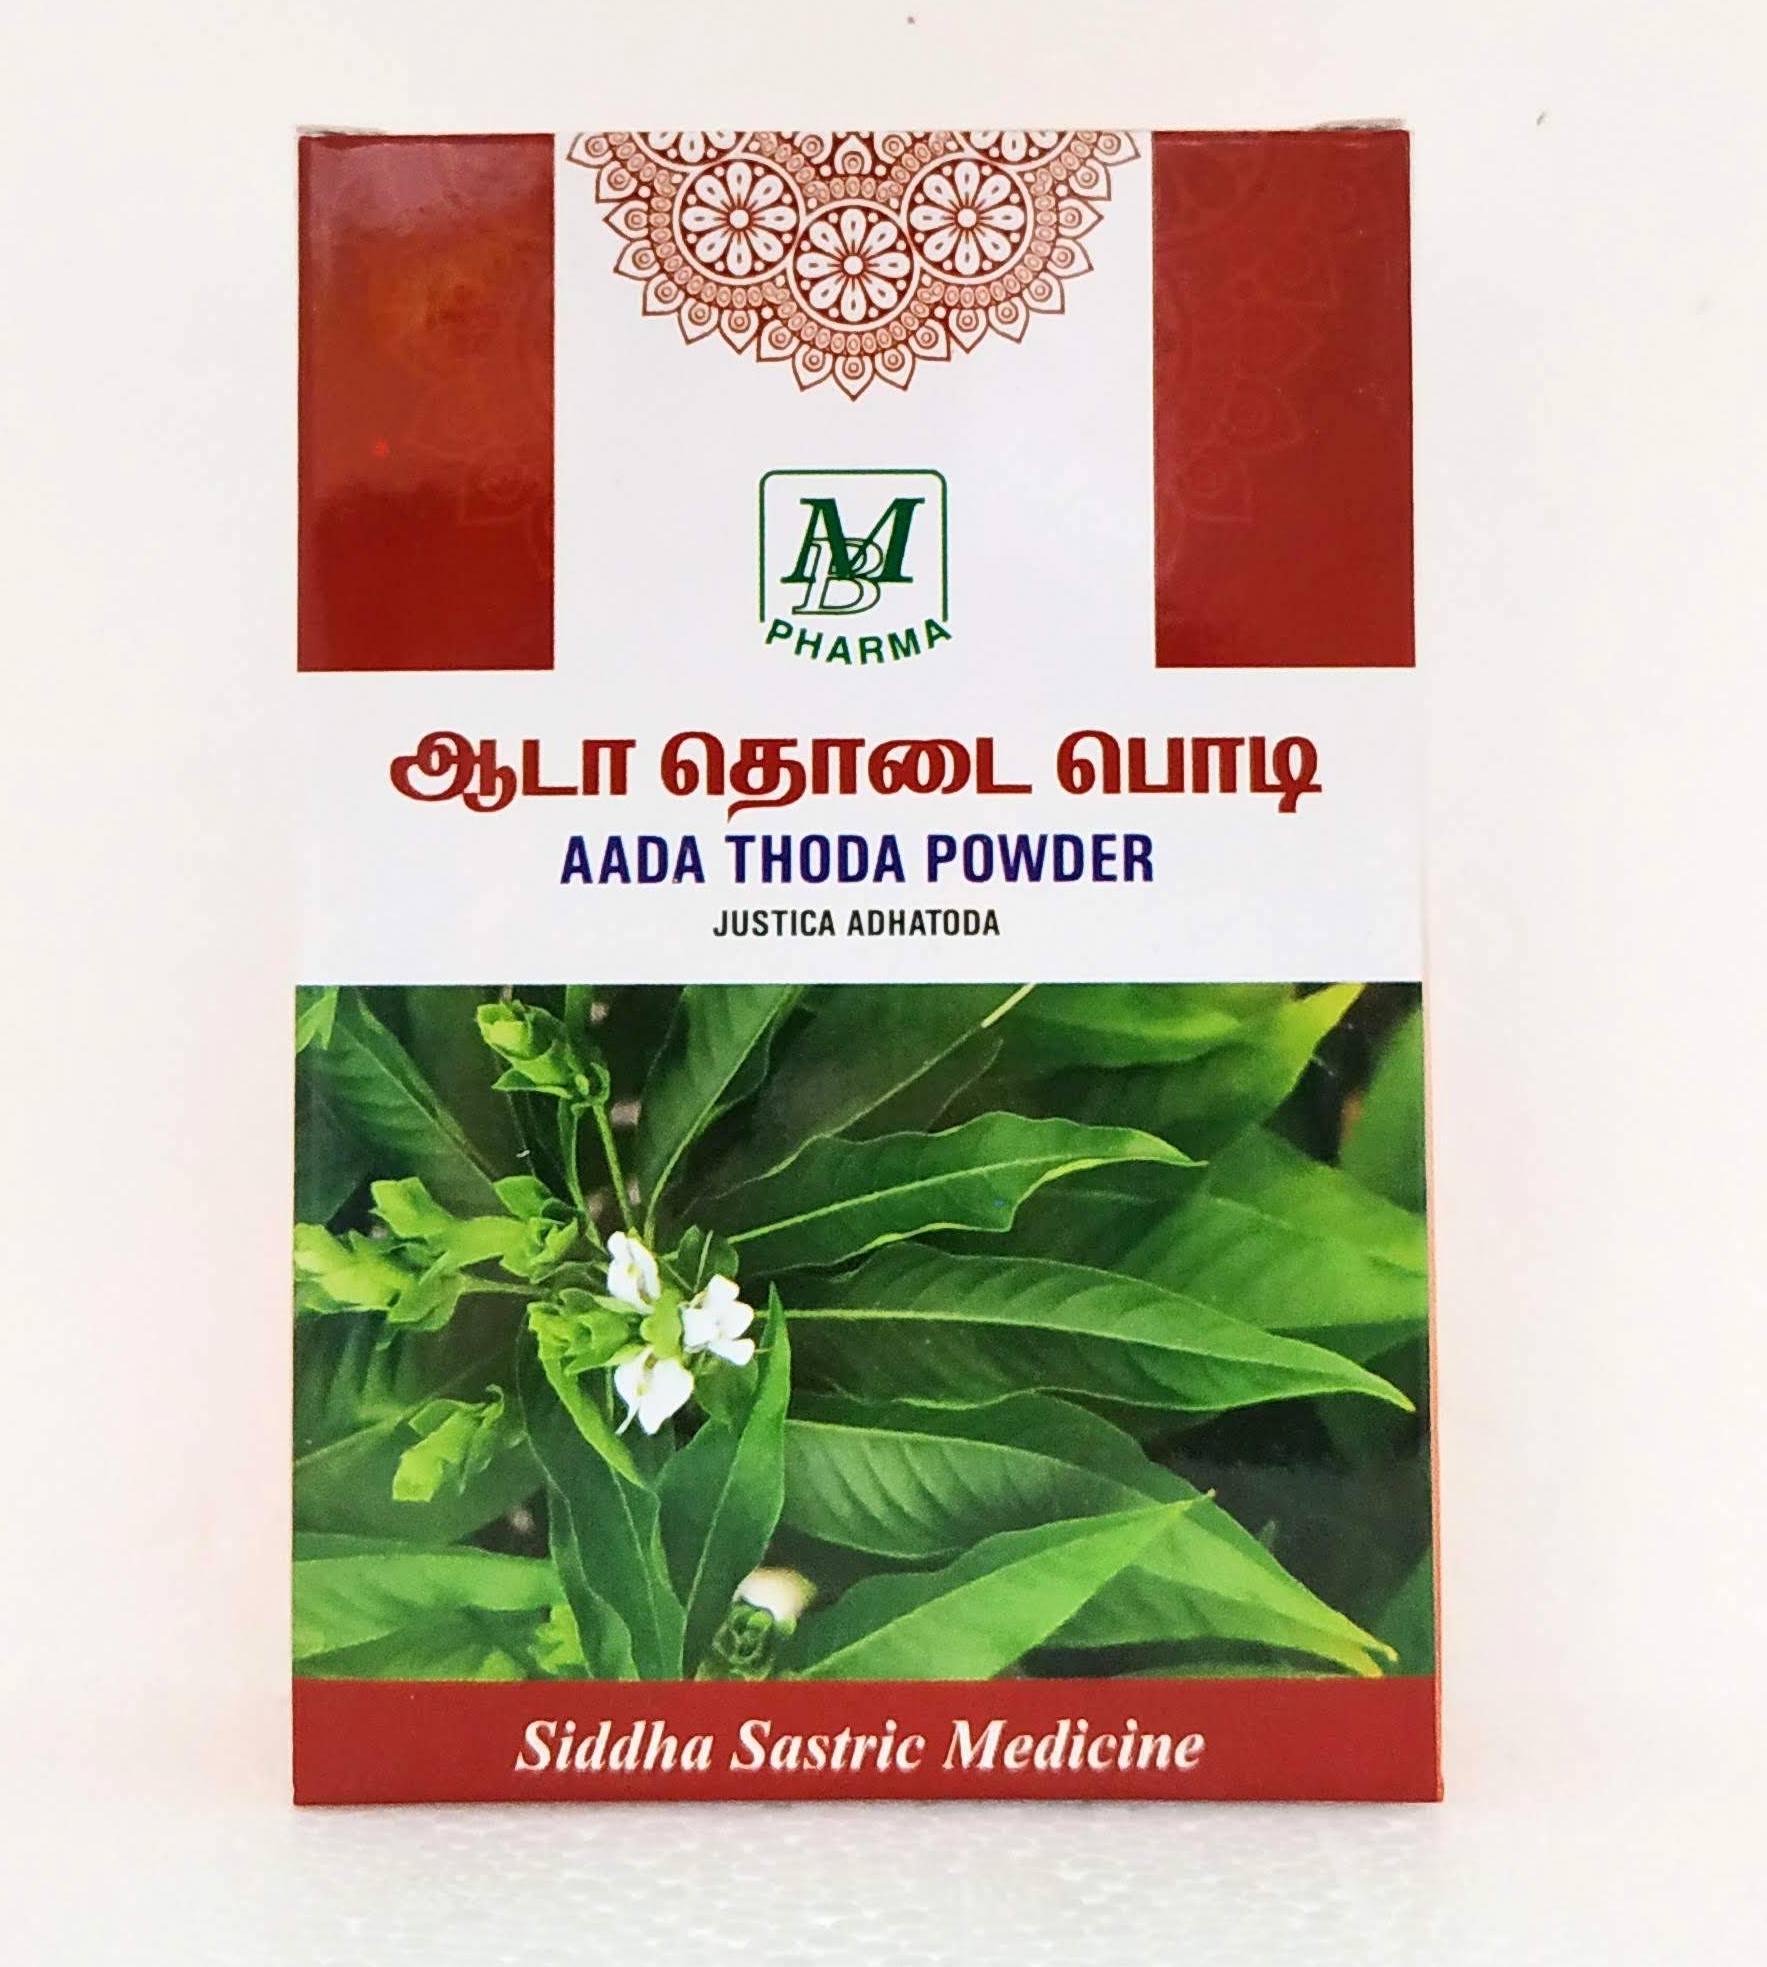 Adathodai Powder 50gm -  MB Pharma - Medizzo.com